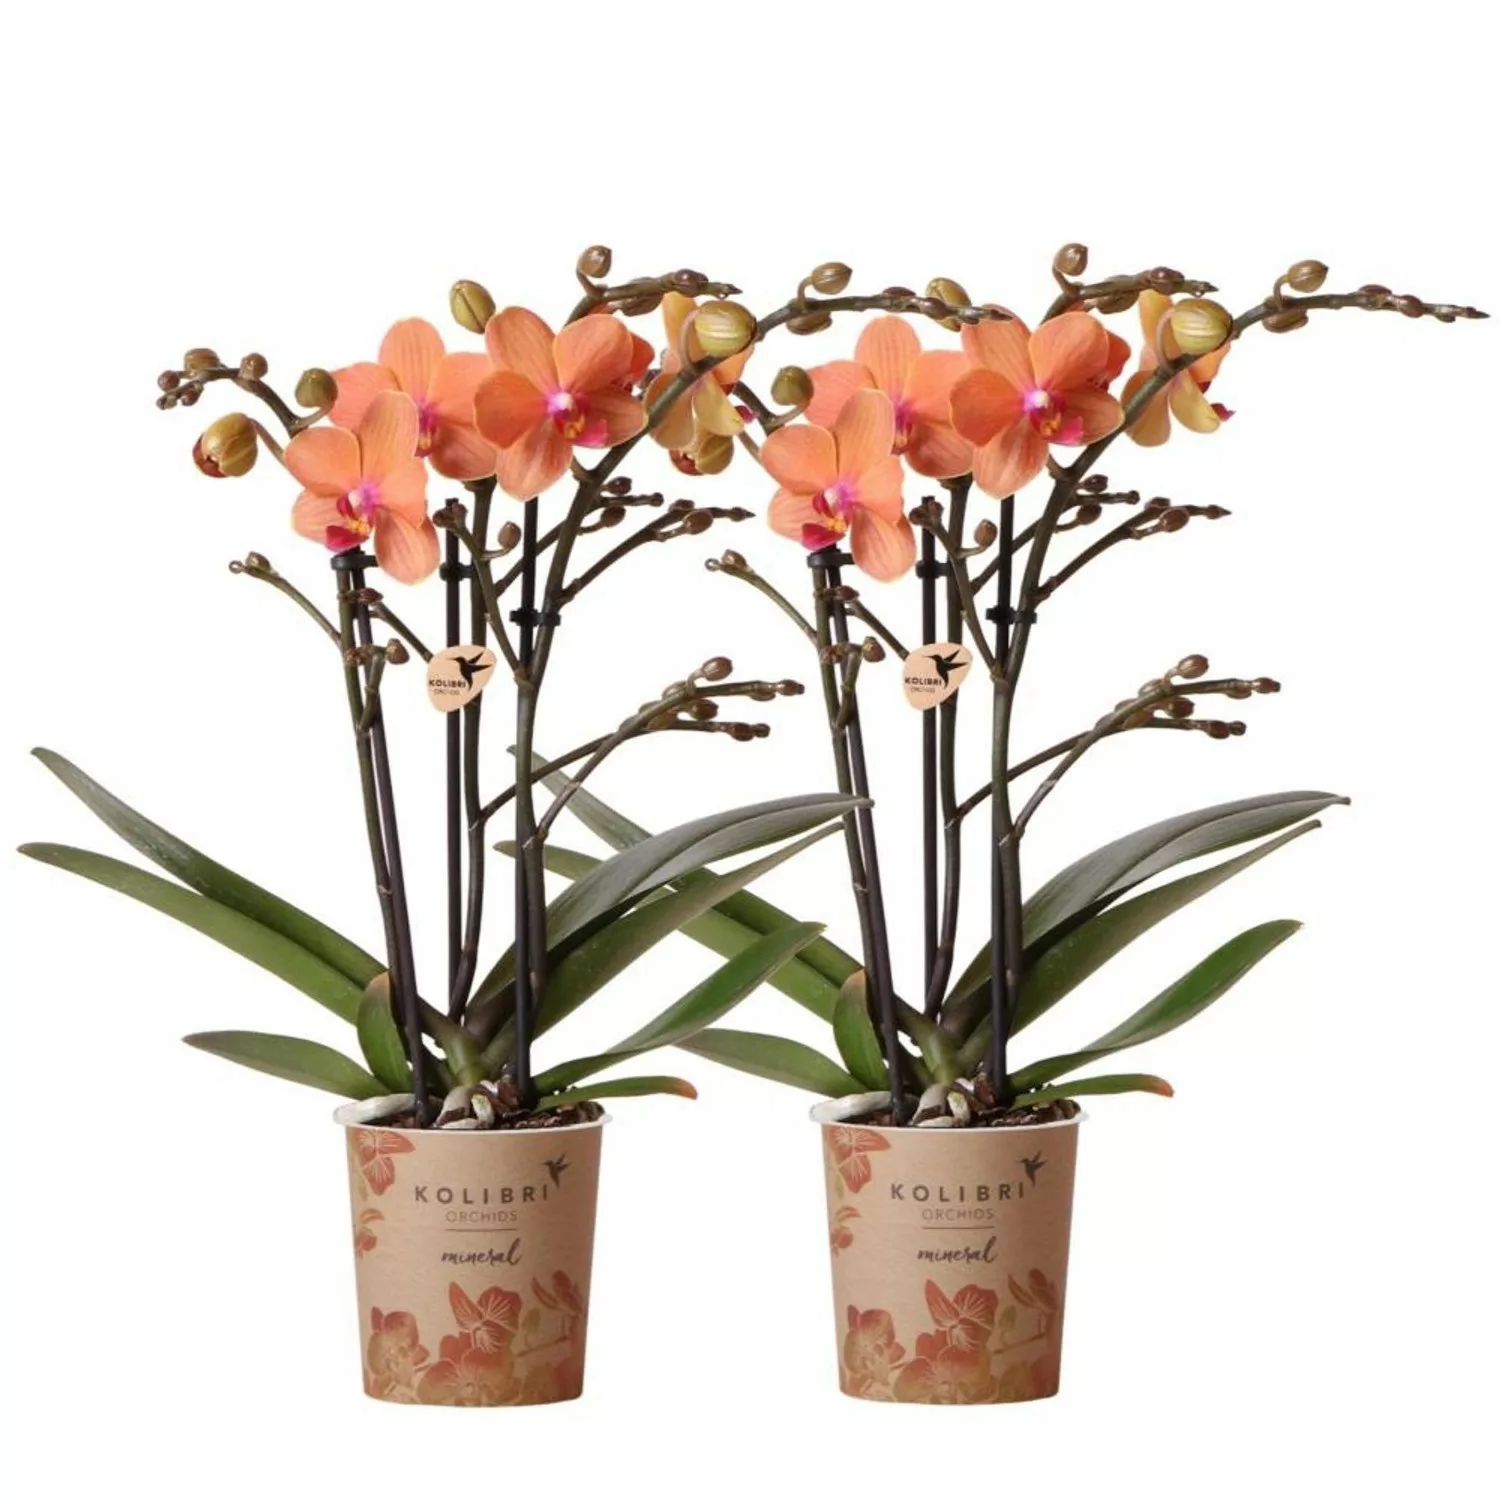 Kolibri Orchids Combi Deal von 2 Orange Phalaenopsis Orchideen Bozen Topfgr günstig online kaufen